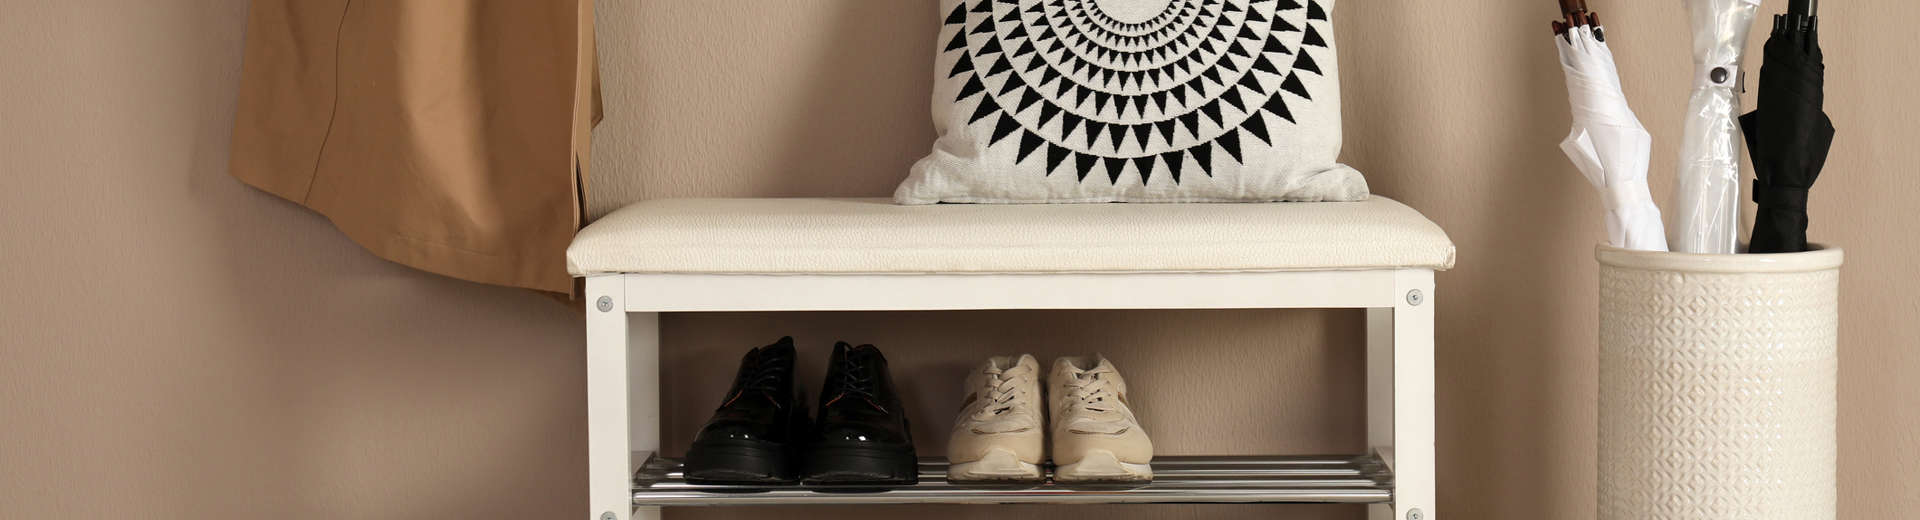 Mudroom Shoe Storage: 8 Entryway Shoe Storage Ideas